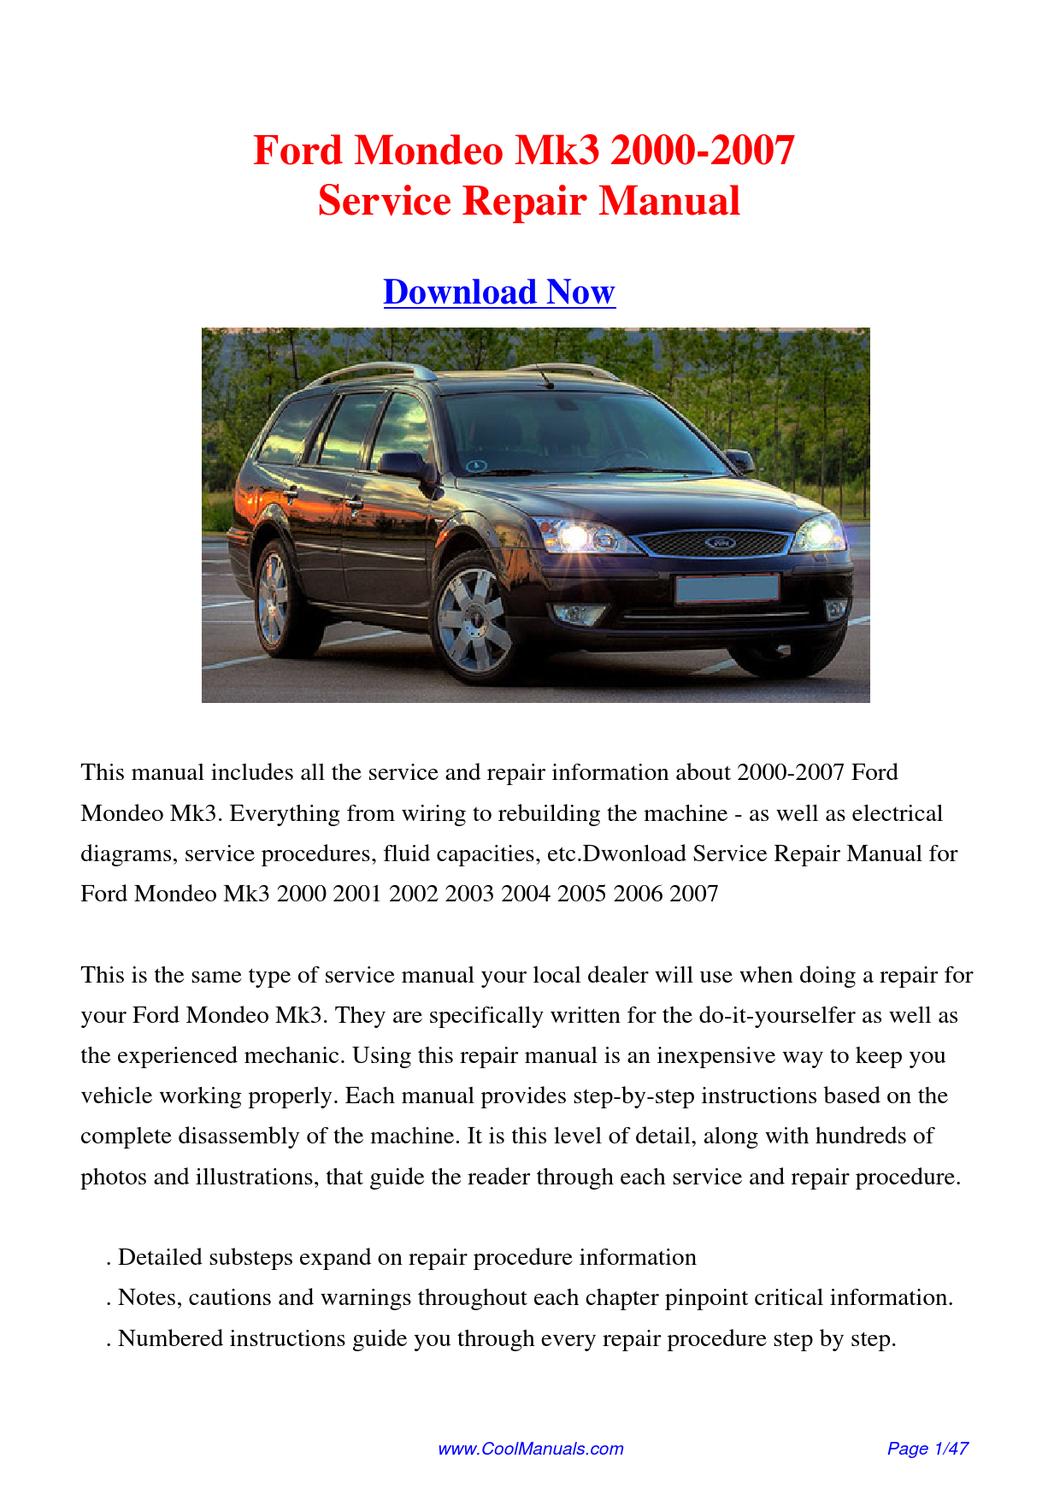 mondeo mk3 repair manual pdf